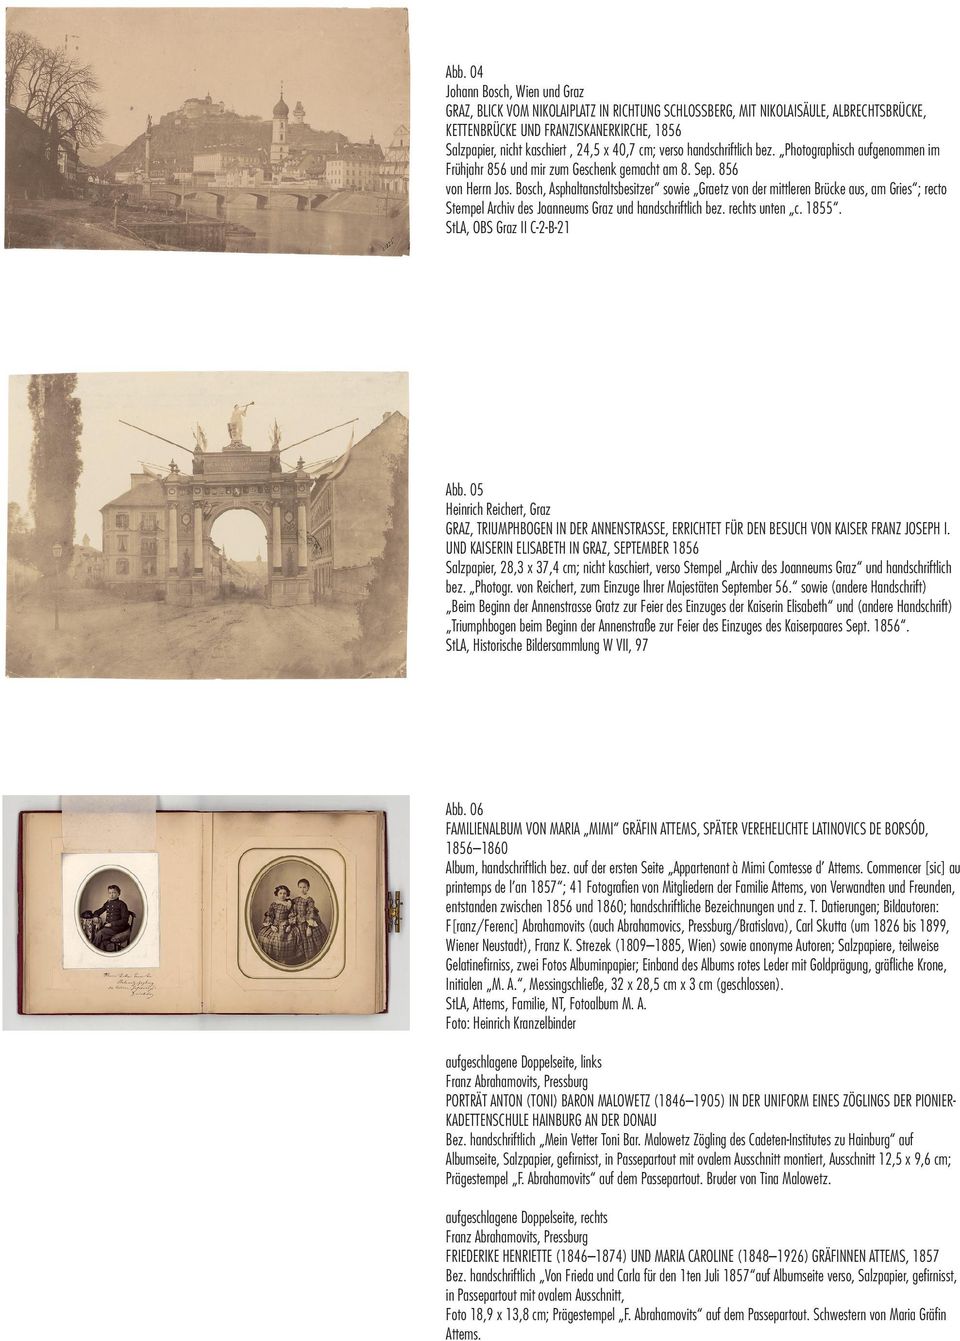 Bosch, Asphaltanstaltsbesitzer sowie Graetz von der mittleren Brücke aus, am Gries ; recto Stempel Archiv des Joanneums Graz und handschriftlich bez. rechts unten c. 1855.